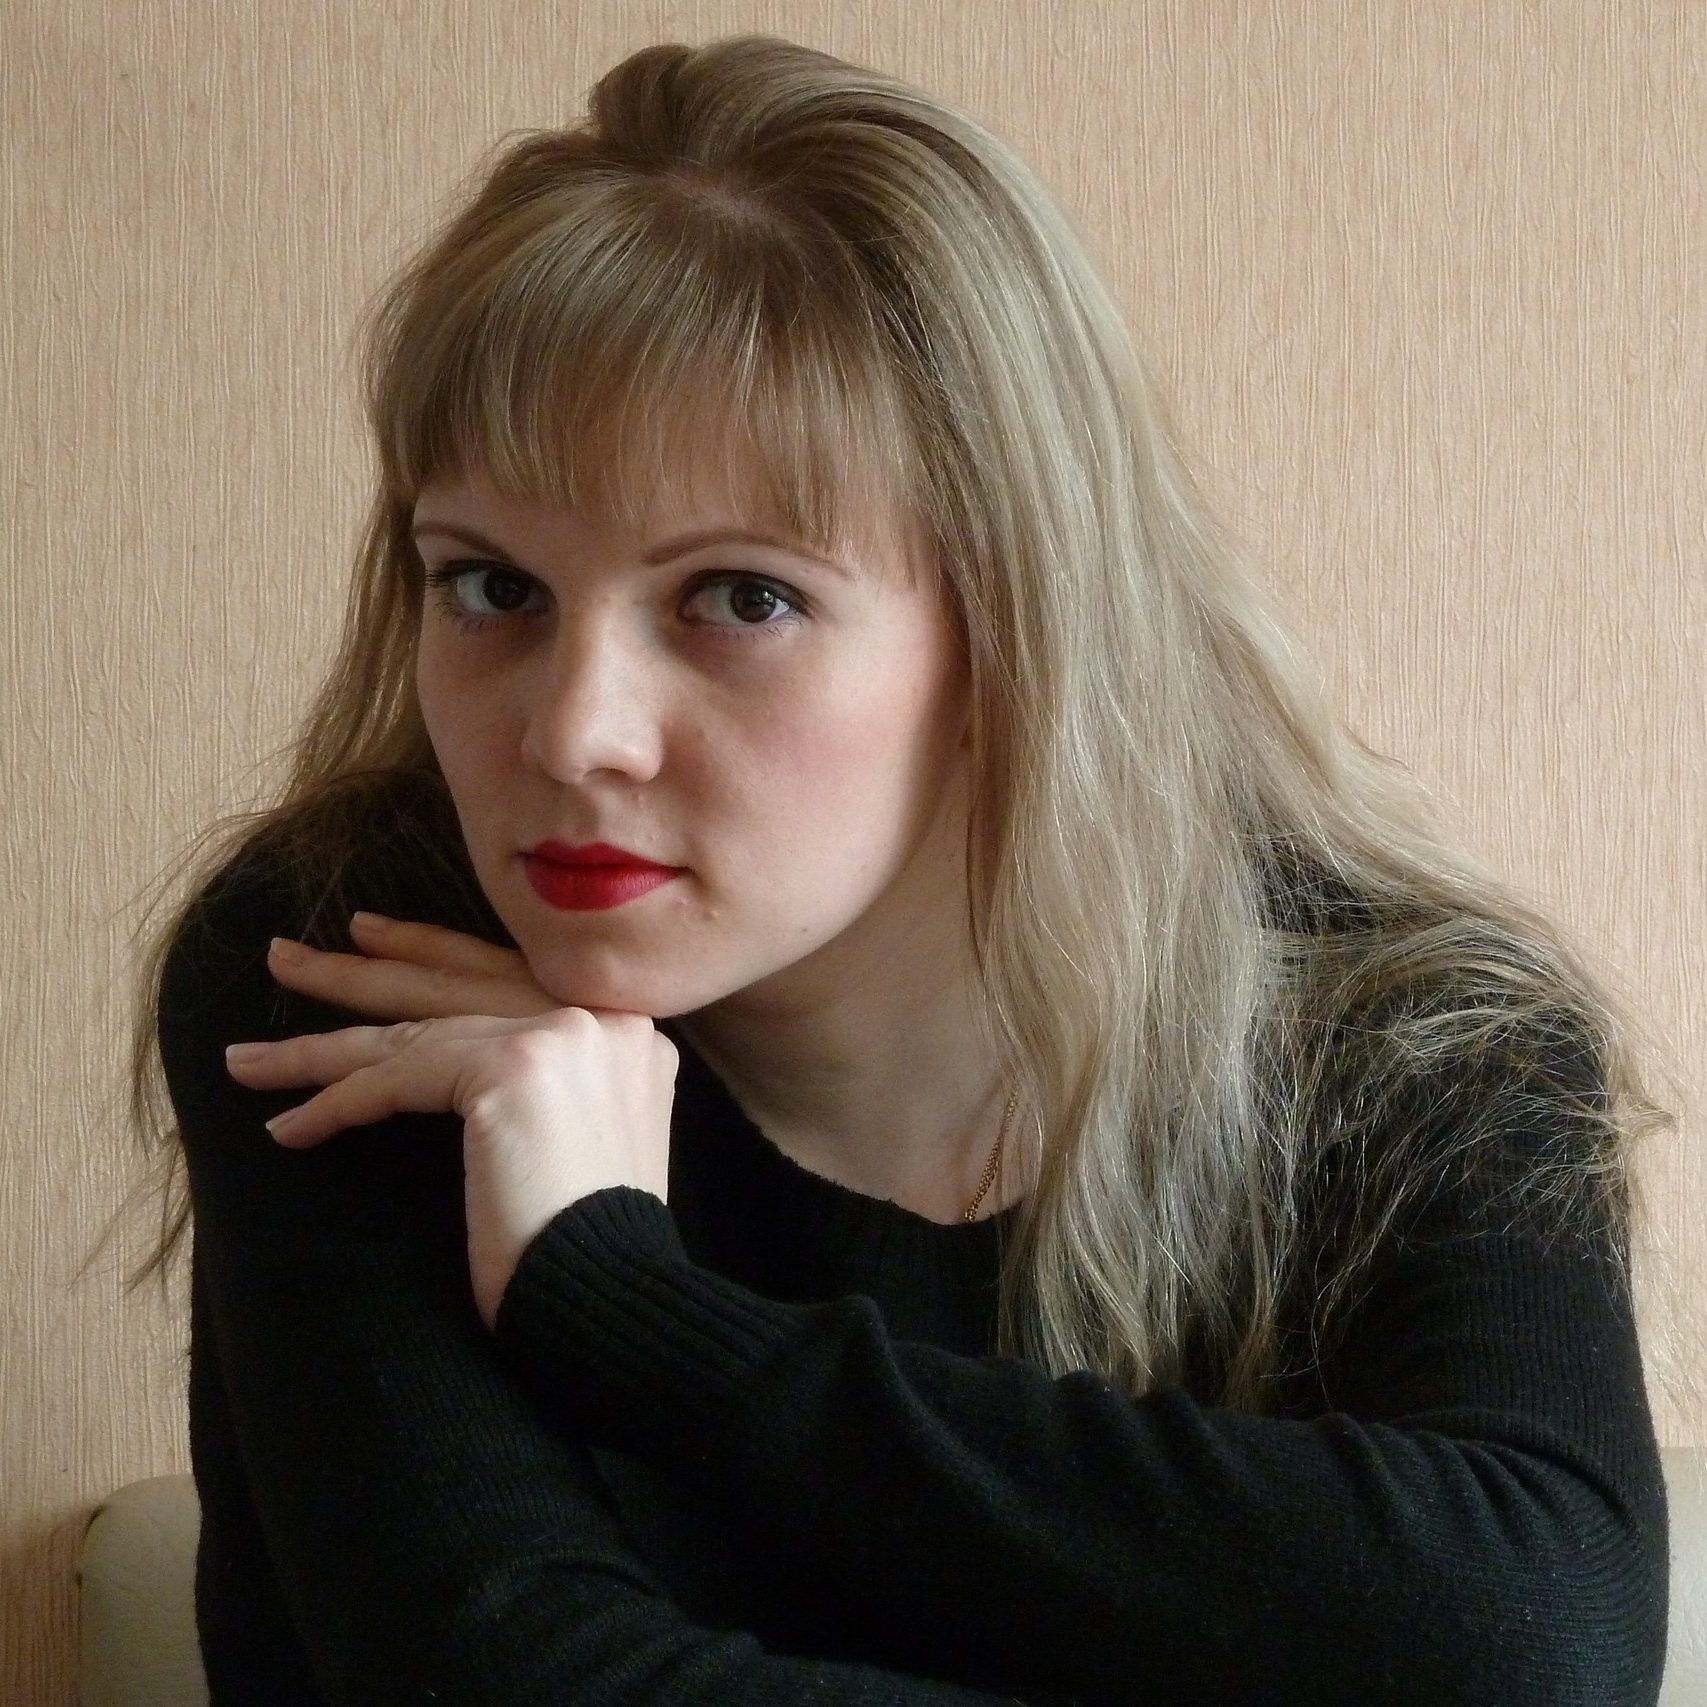 Психолог Анастасия Афанасенко: Никто вам не может принадлежать, учитесь отпускать